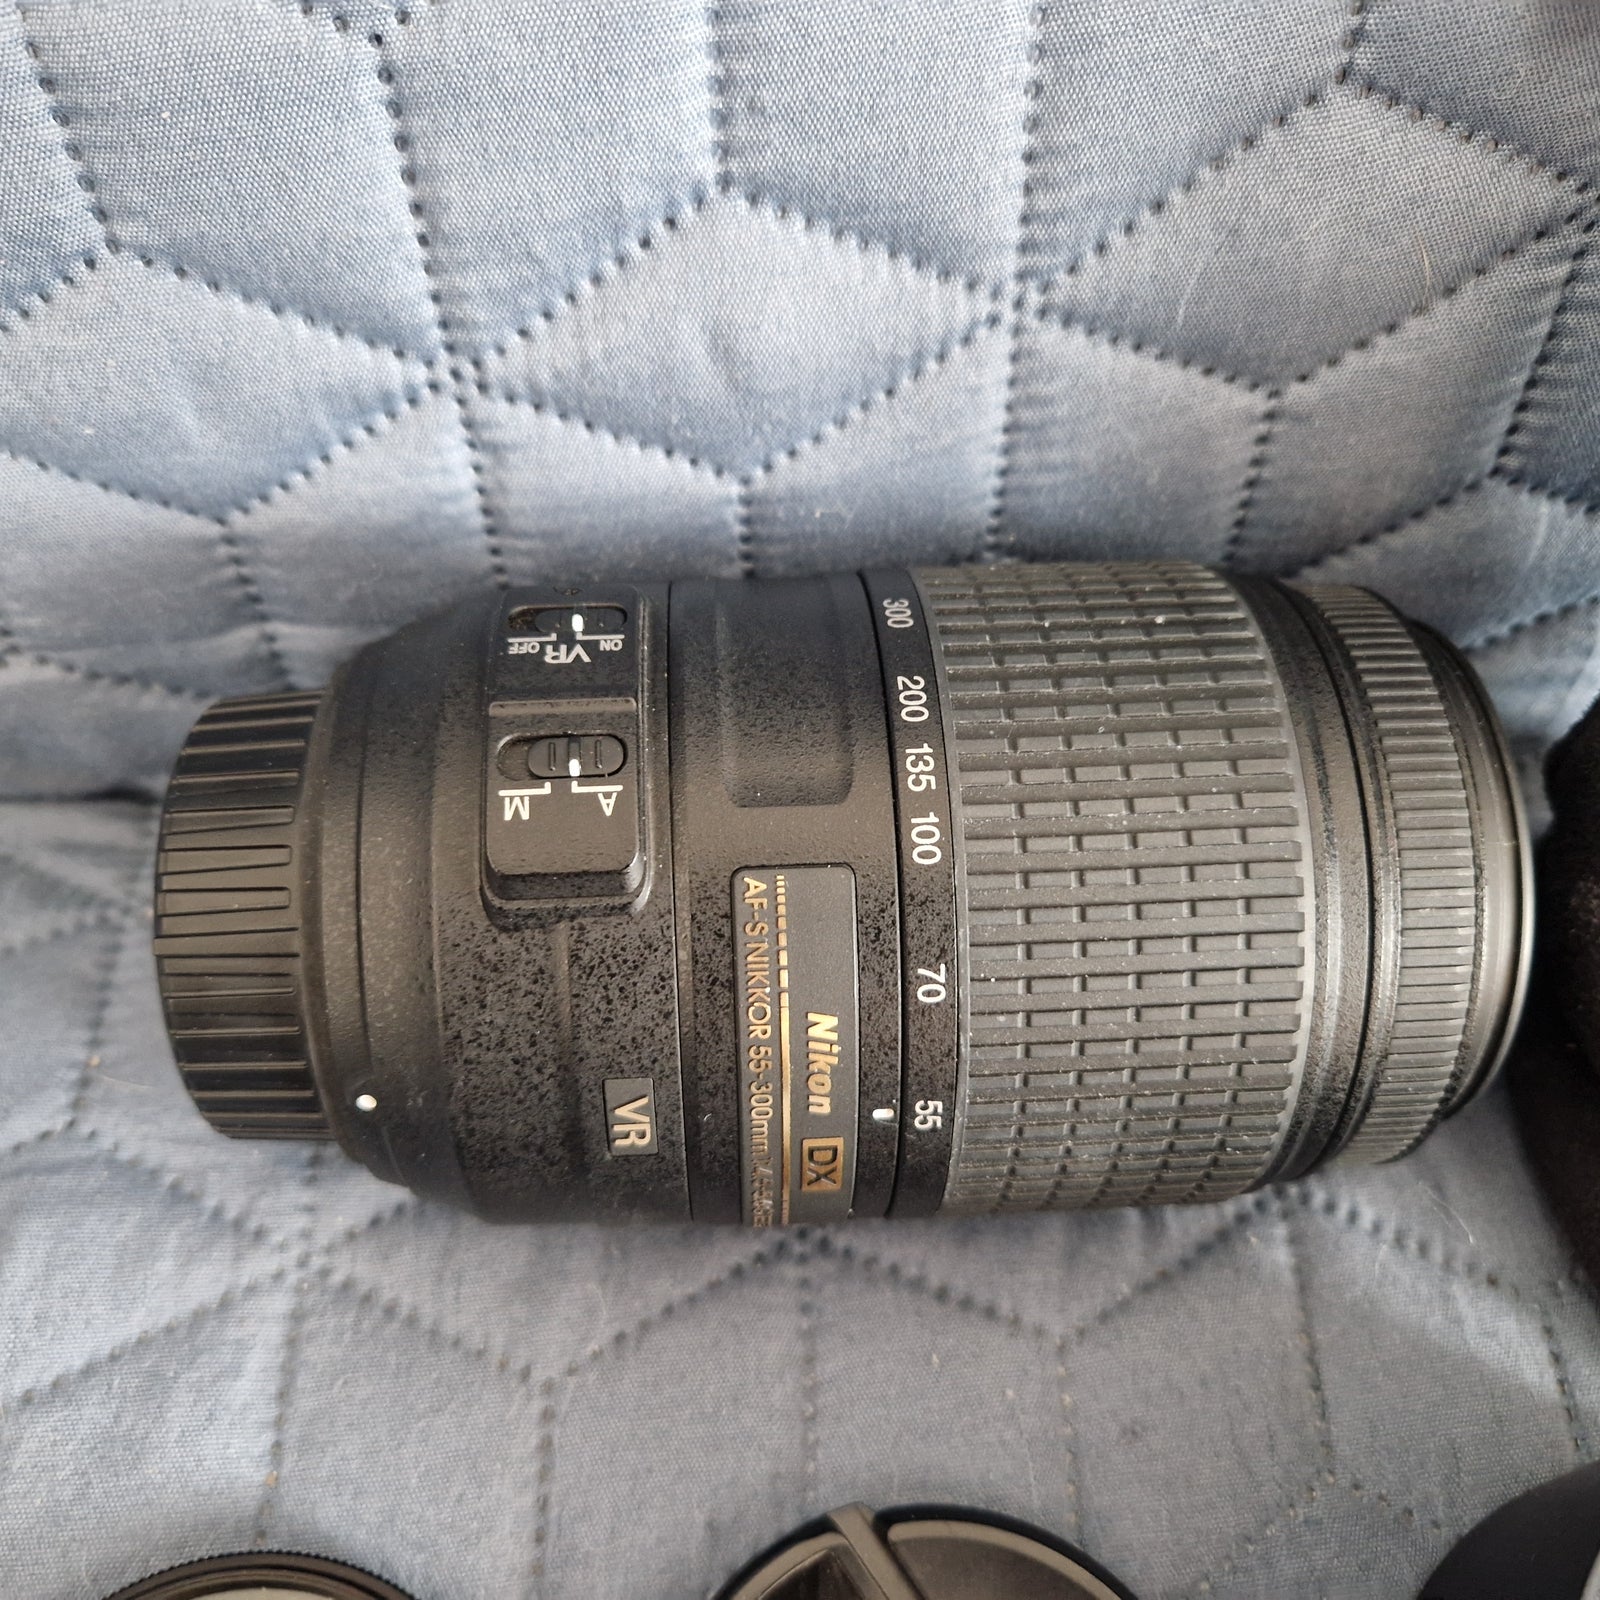 Zoomobjektiv, Nikon, AF.-S NIKKOR 55-300 mm 1:4.5-5.6 GED